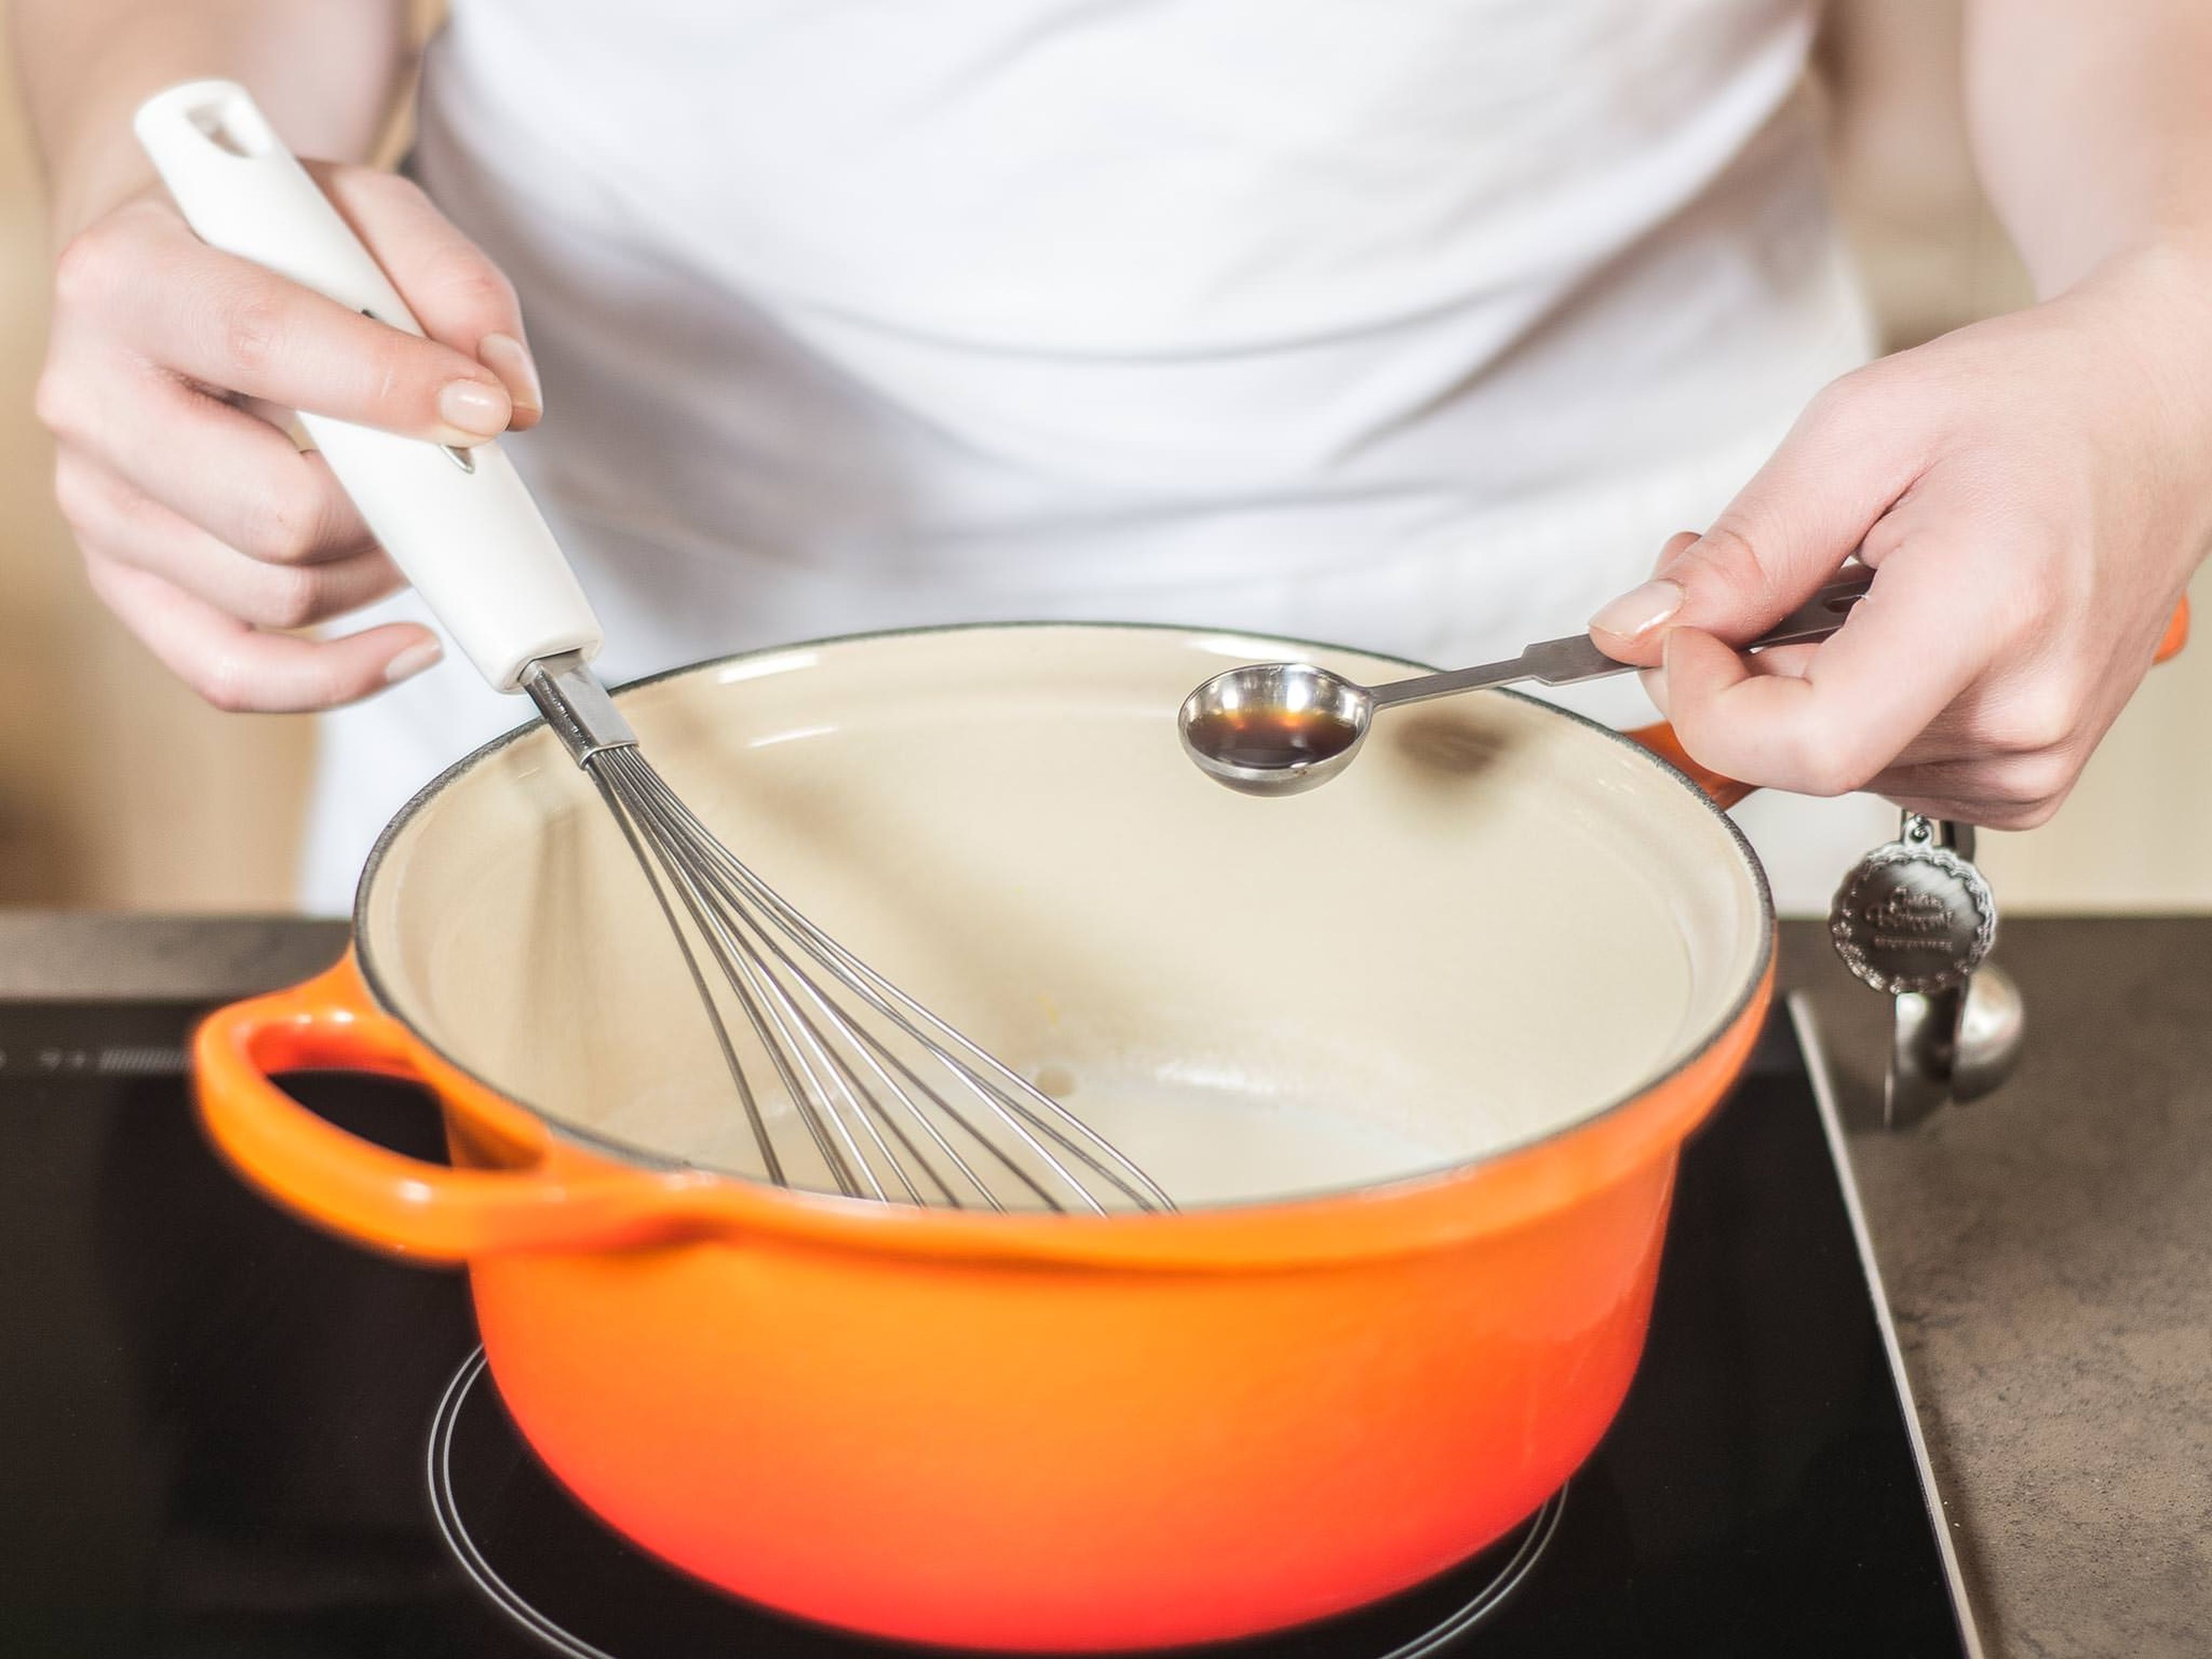 In einem kleinen Topf Milch mit Vanilleextrakt aufkochen. Die eingeweichte Gelatine aus dem Wasser nehmen und in der heißen Milch auflösen.